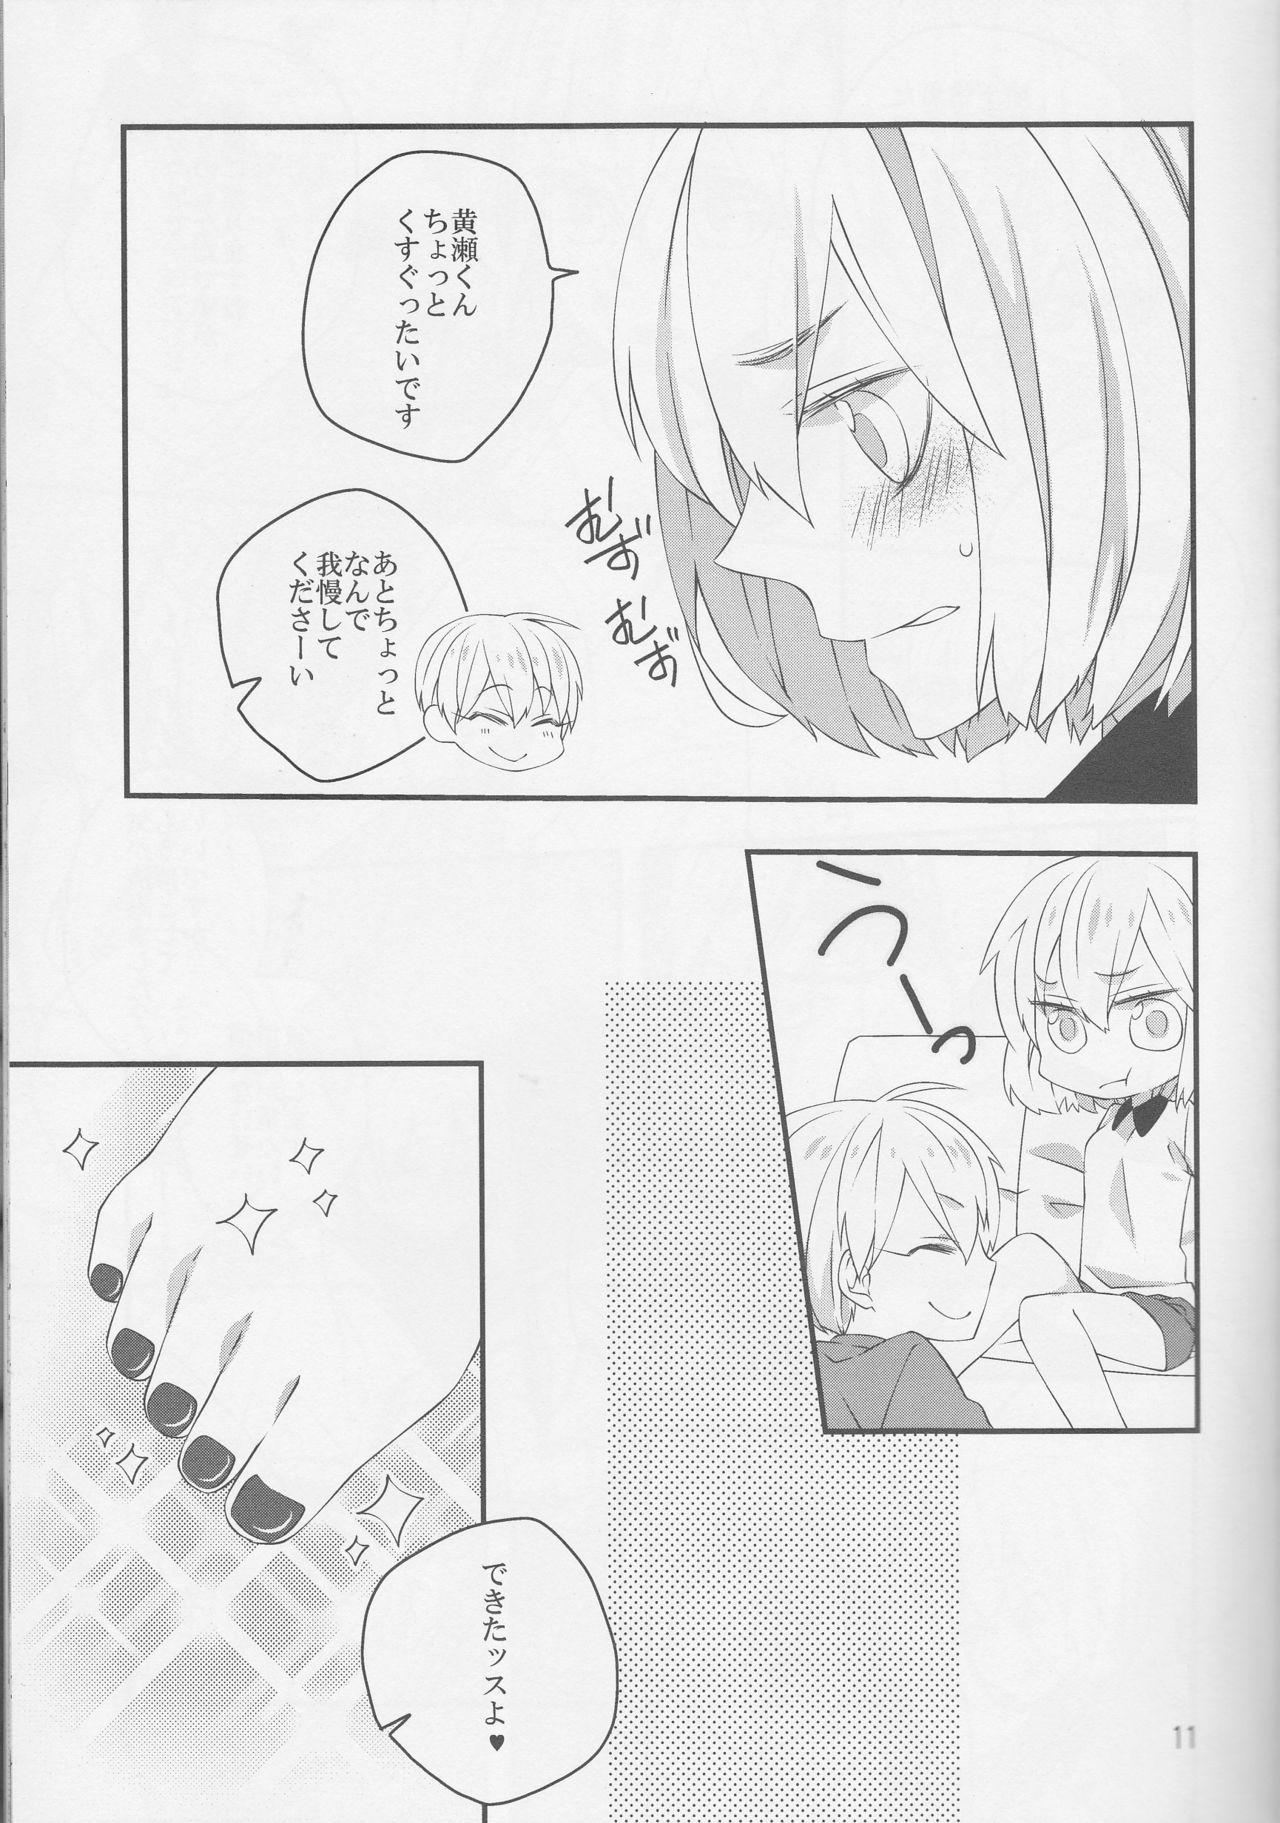 Safado Pedicure Time - Kuroko no basuke Teentube - Page 11